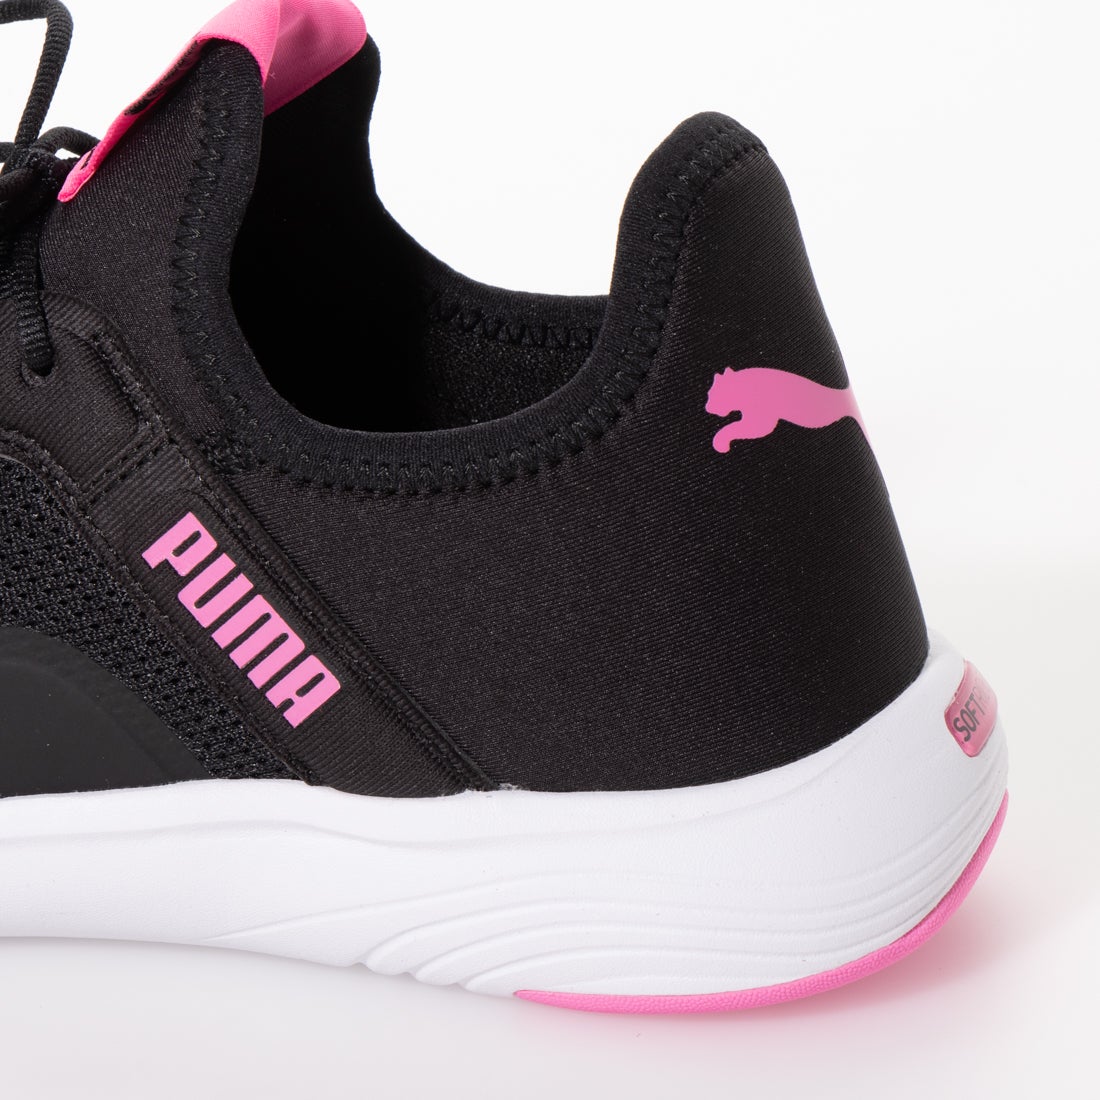 プーマ Puma レディースローカットスニーカー ブラック ピンク 靴 ファッション通販 ロコンド 自宅で試着 気軽に返品